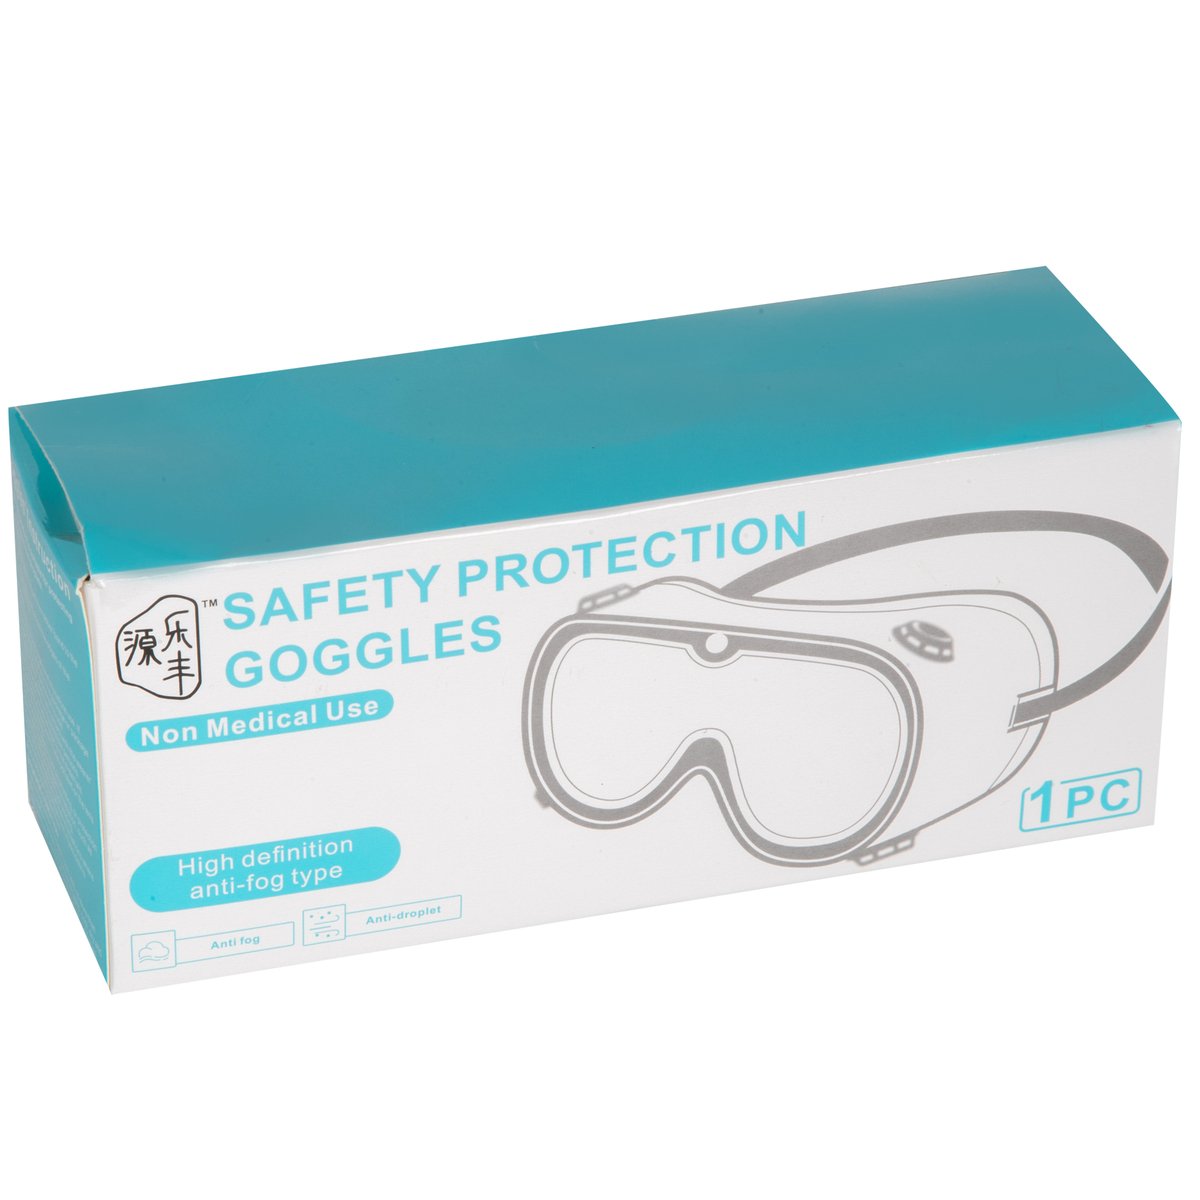 لولو فومي نظارات حماية السلامة - قطعة واحدة